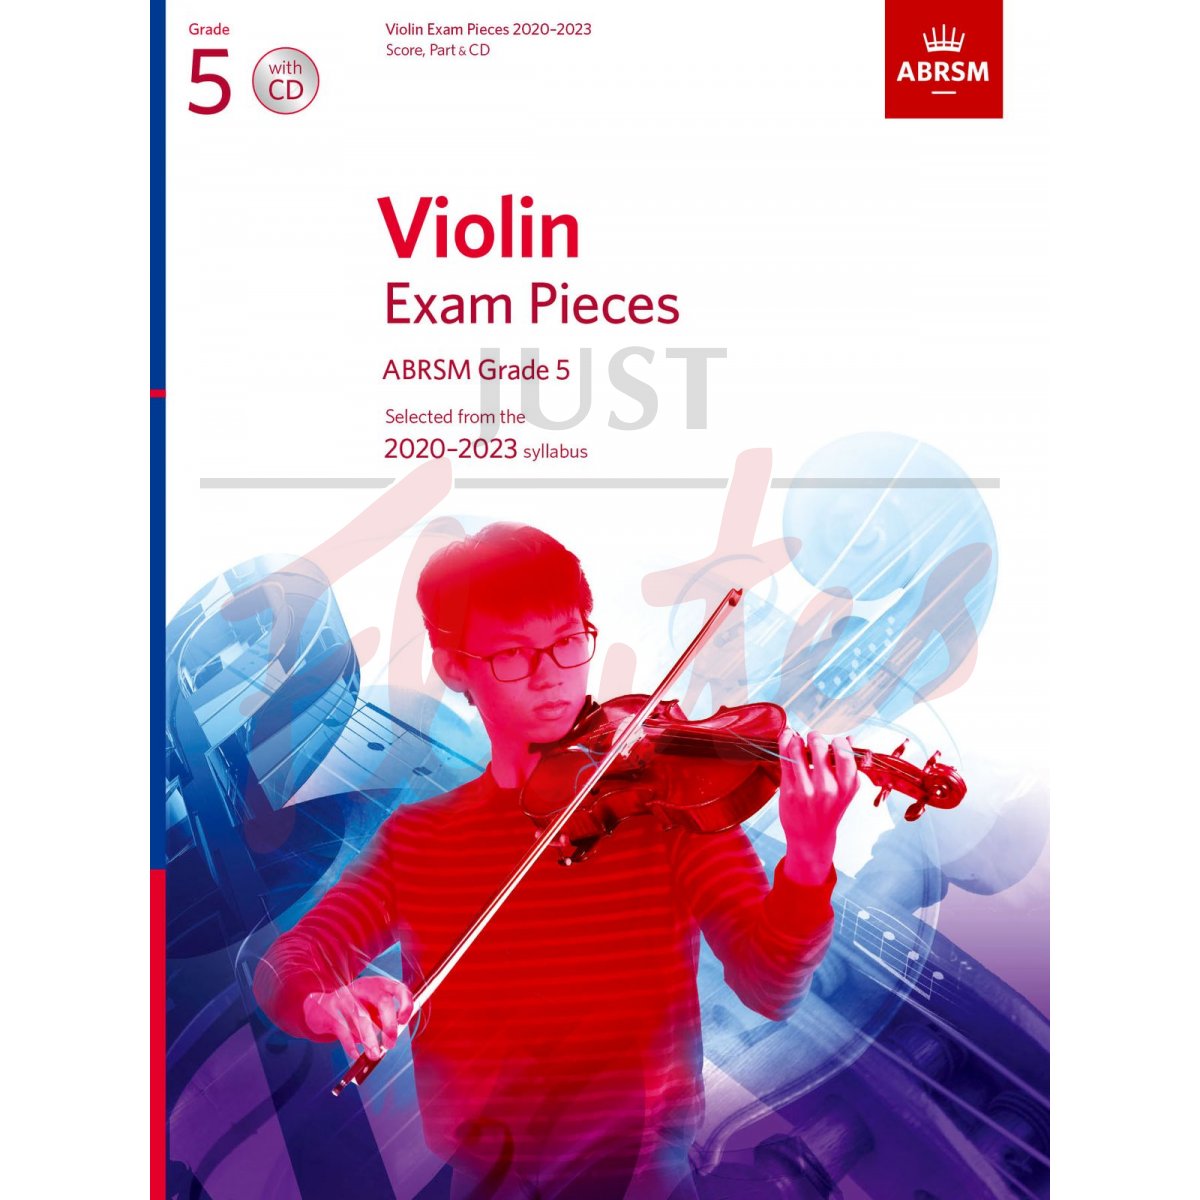 Violin Exam Pieces 2020-2023, Grade 5